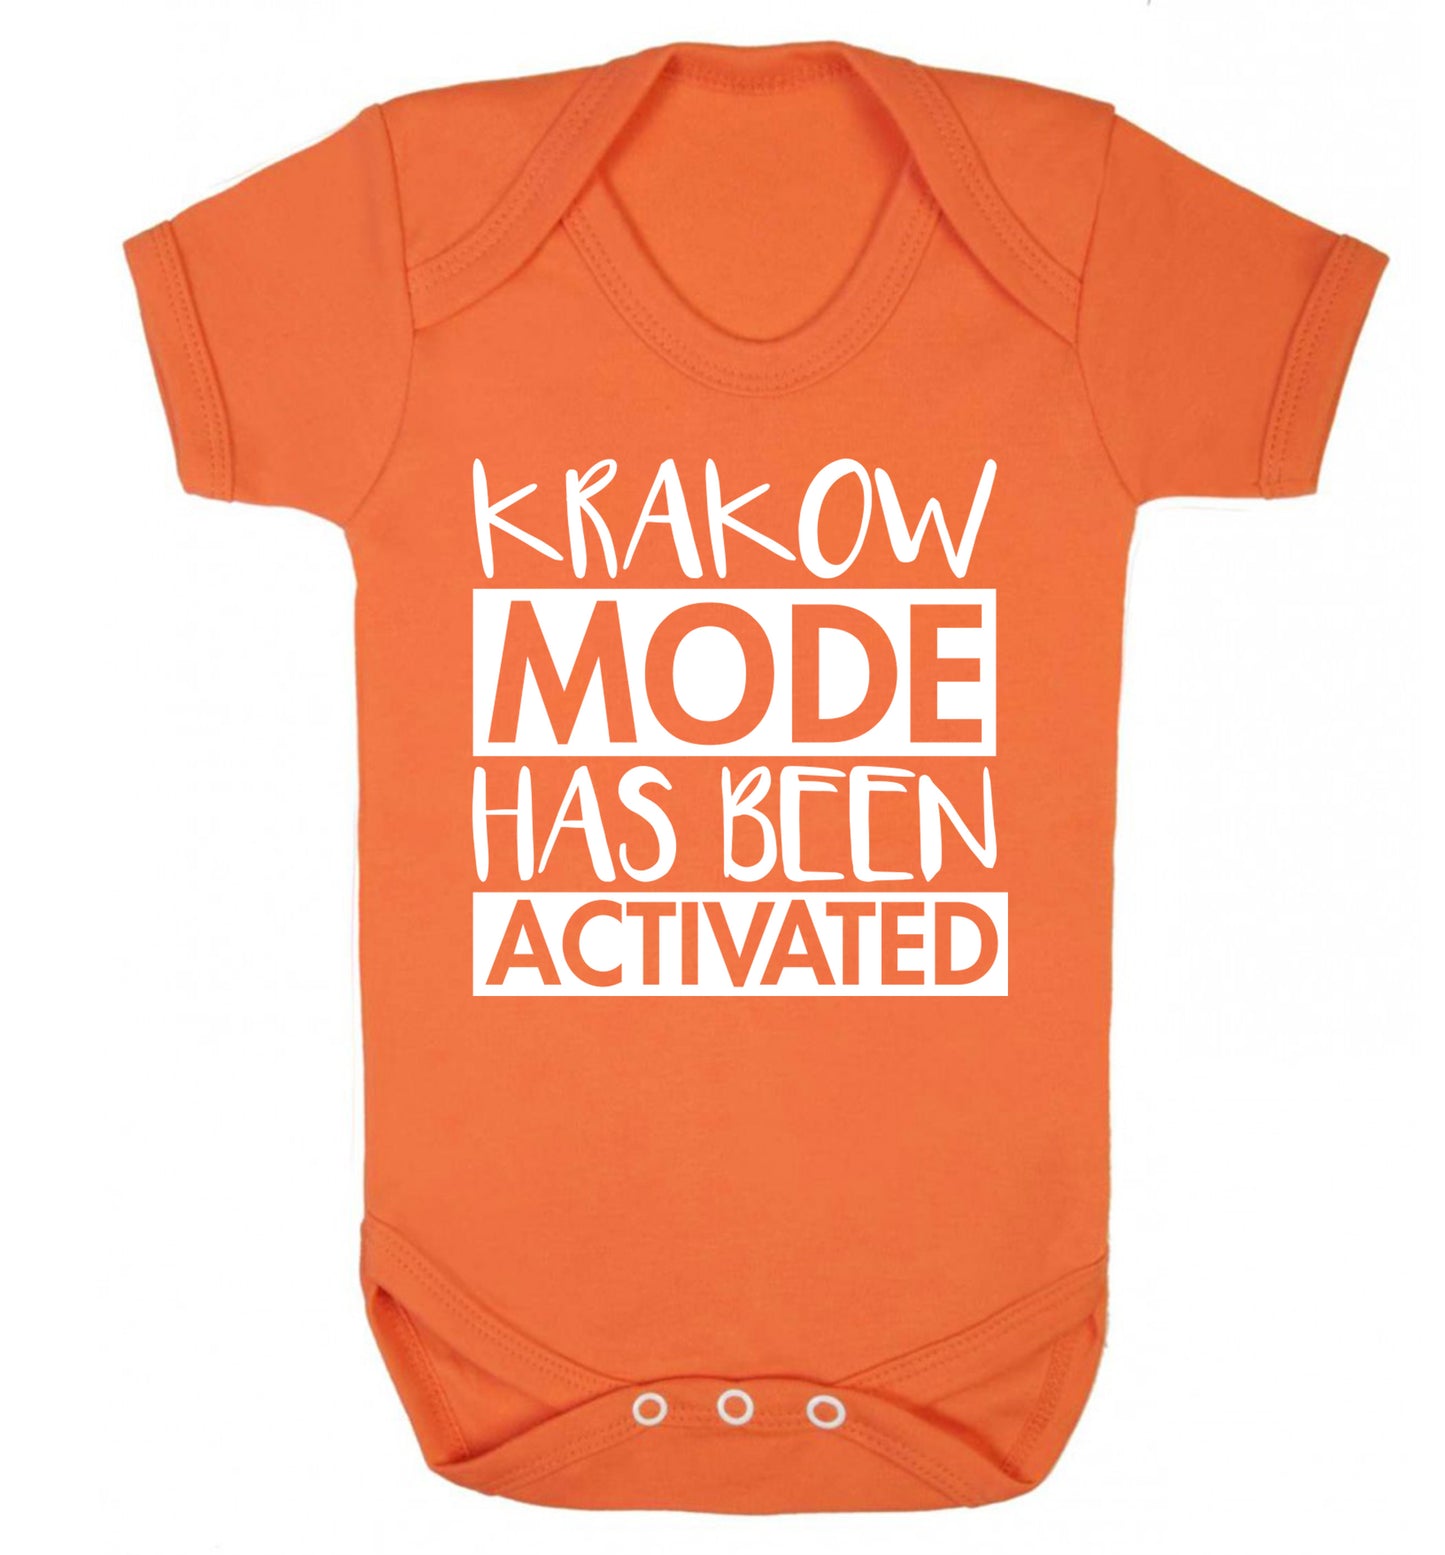 Krakow mode has been activated Baby Vest orange 18-24 months